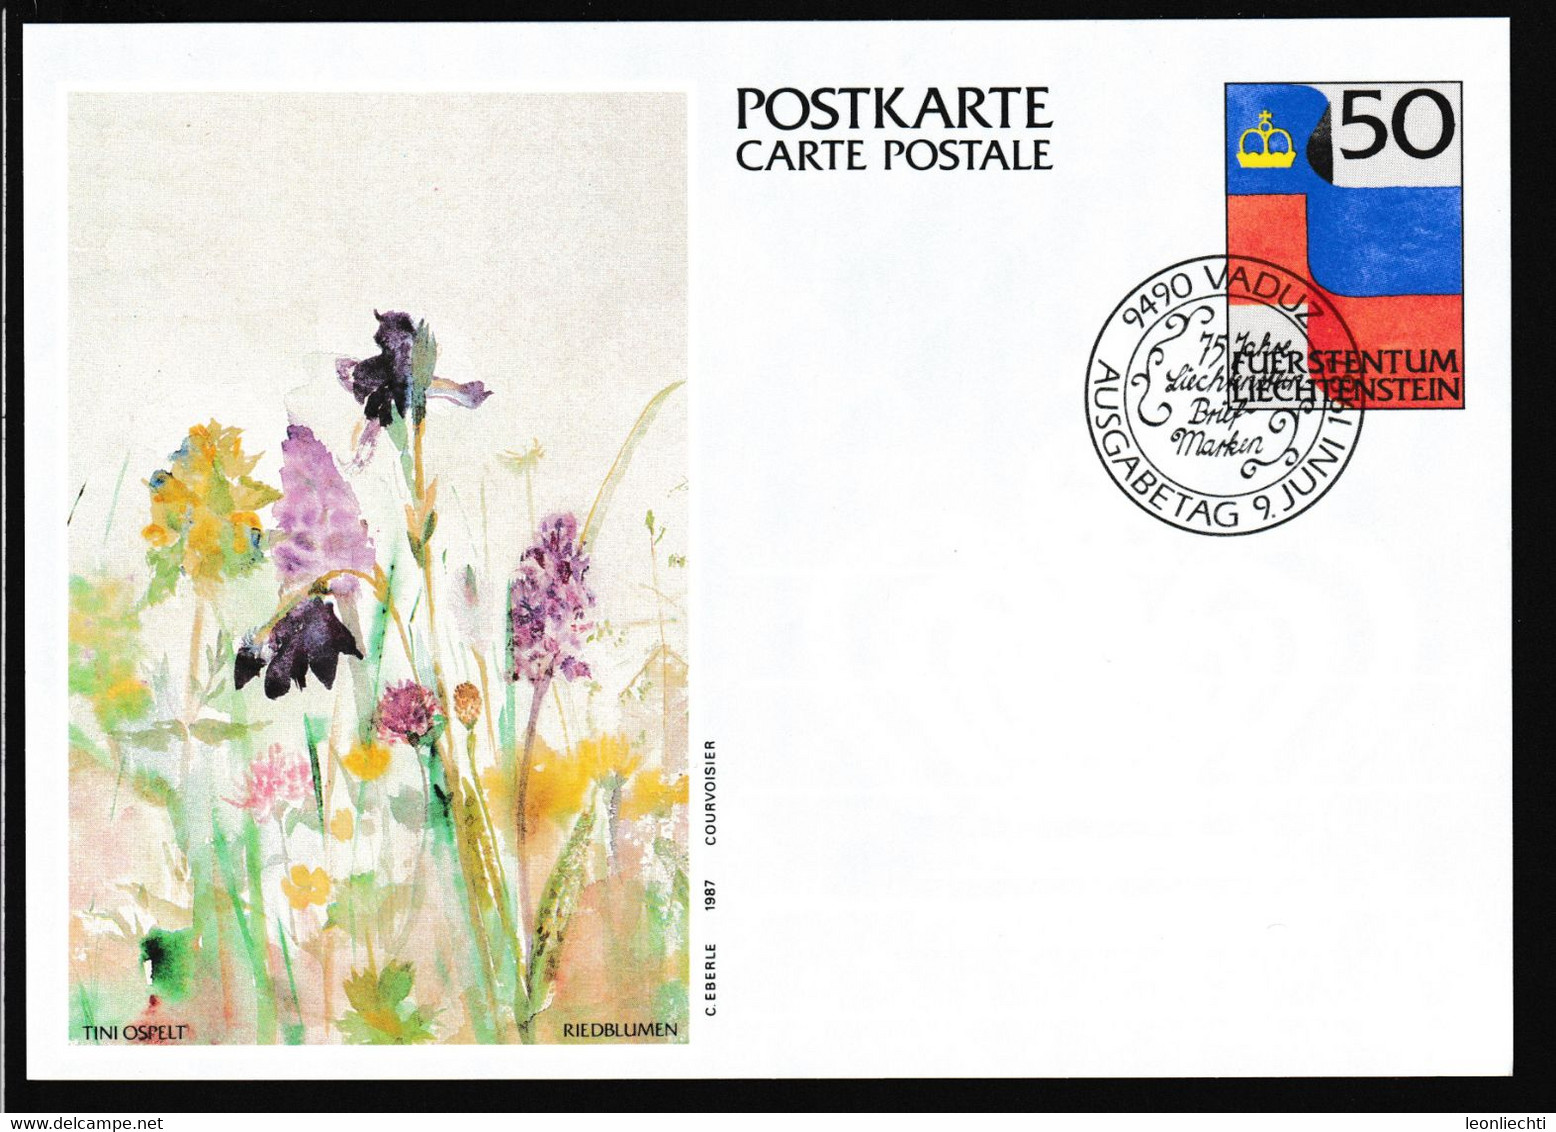 1987 Liechtenstein, Luftpost Carte Postale - Postkarte Ganzsache: Tini Ospelt , Riedblumen - Ganzsachen